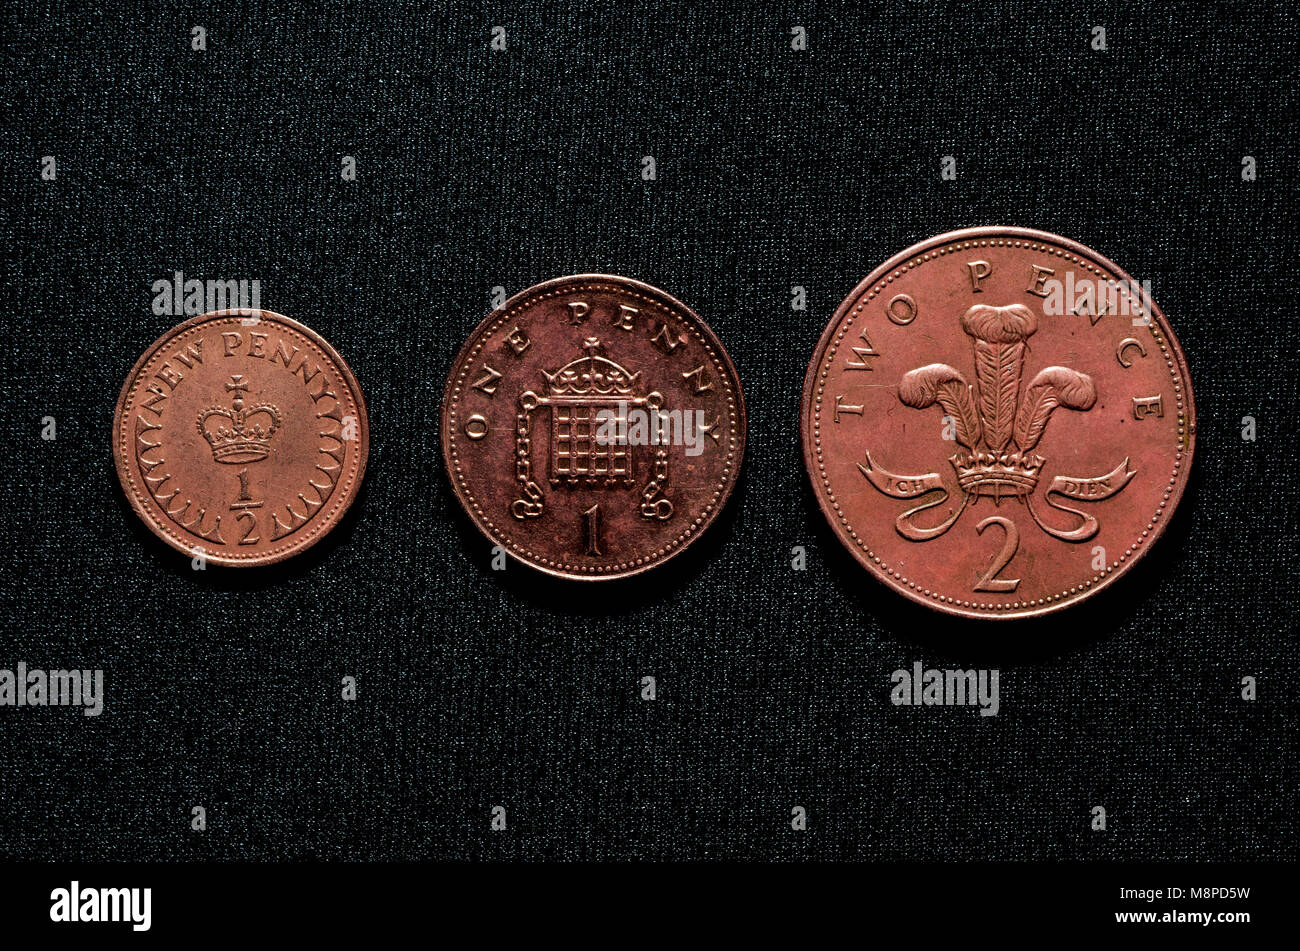 British 'copper' decimal coins Stock Photo